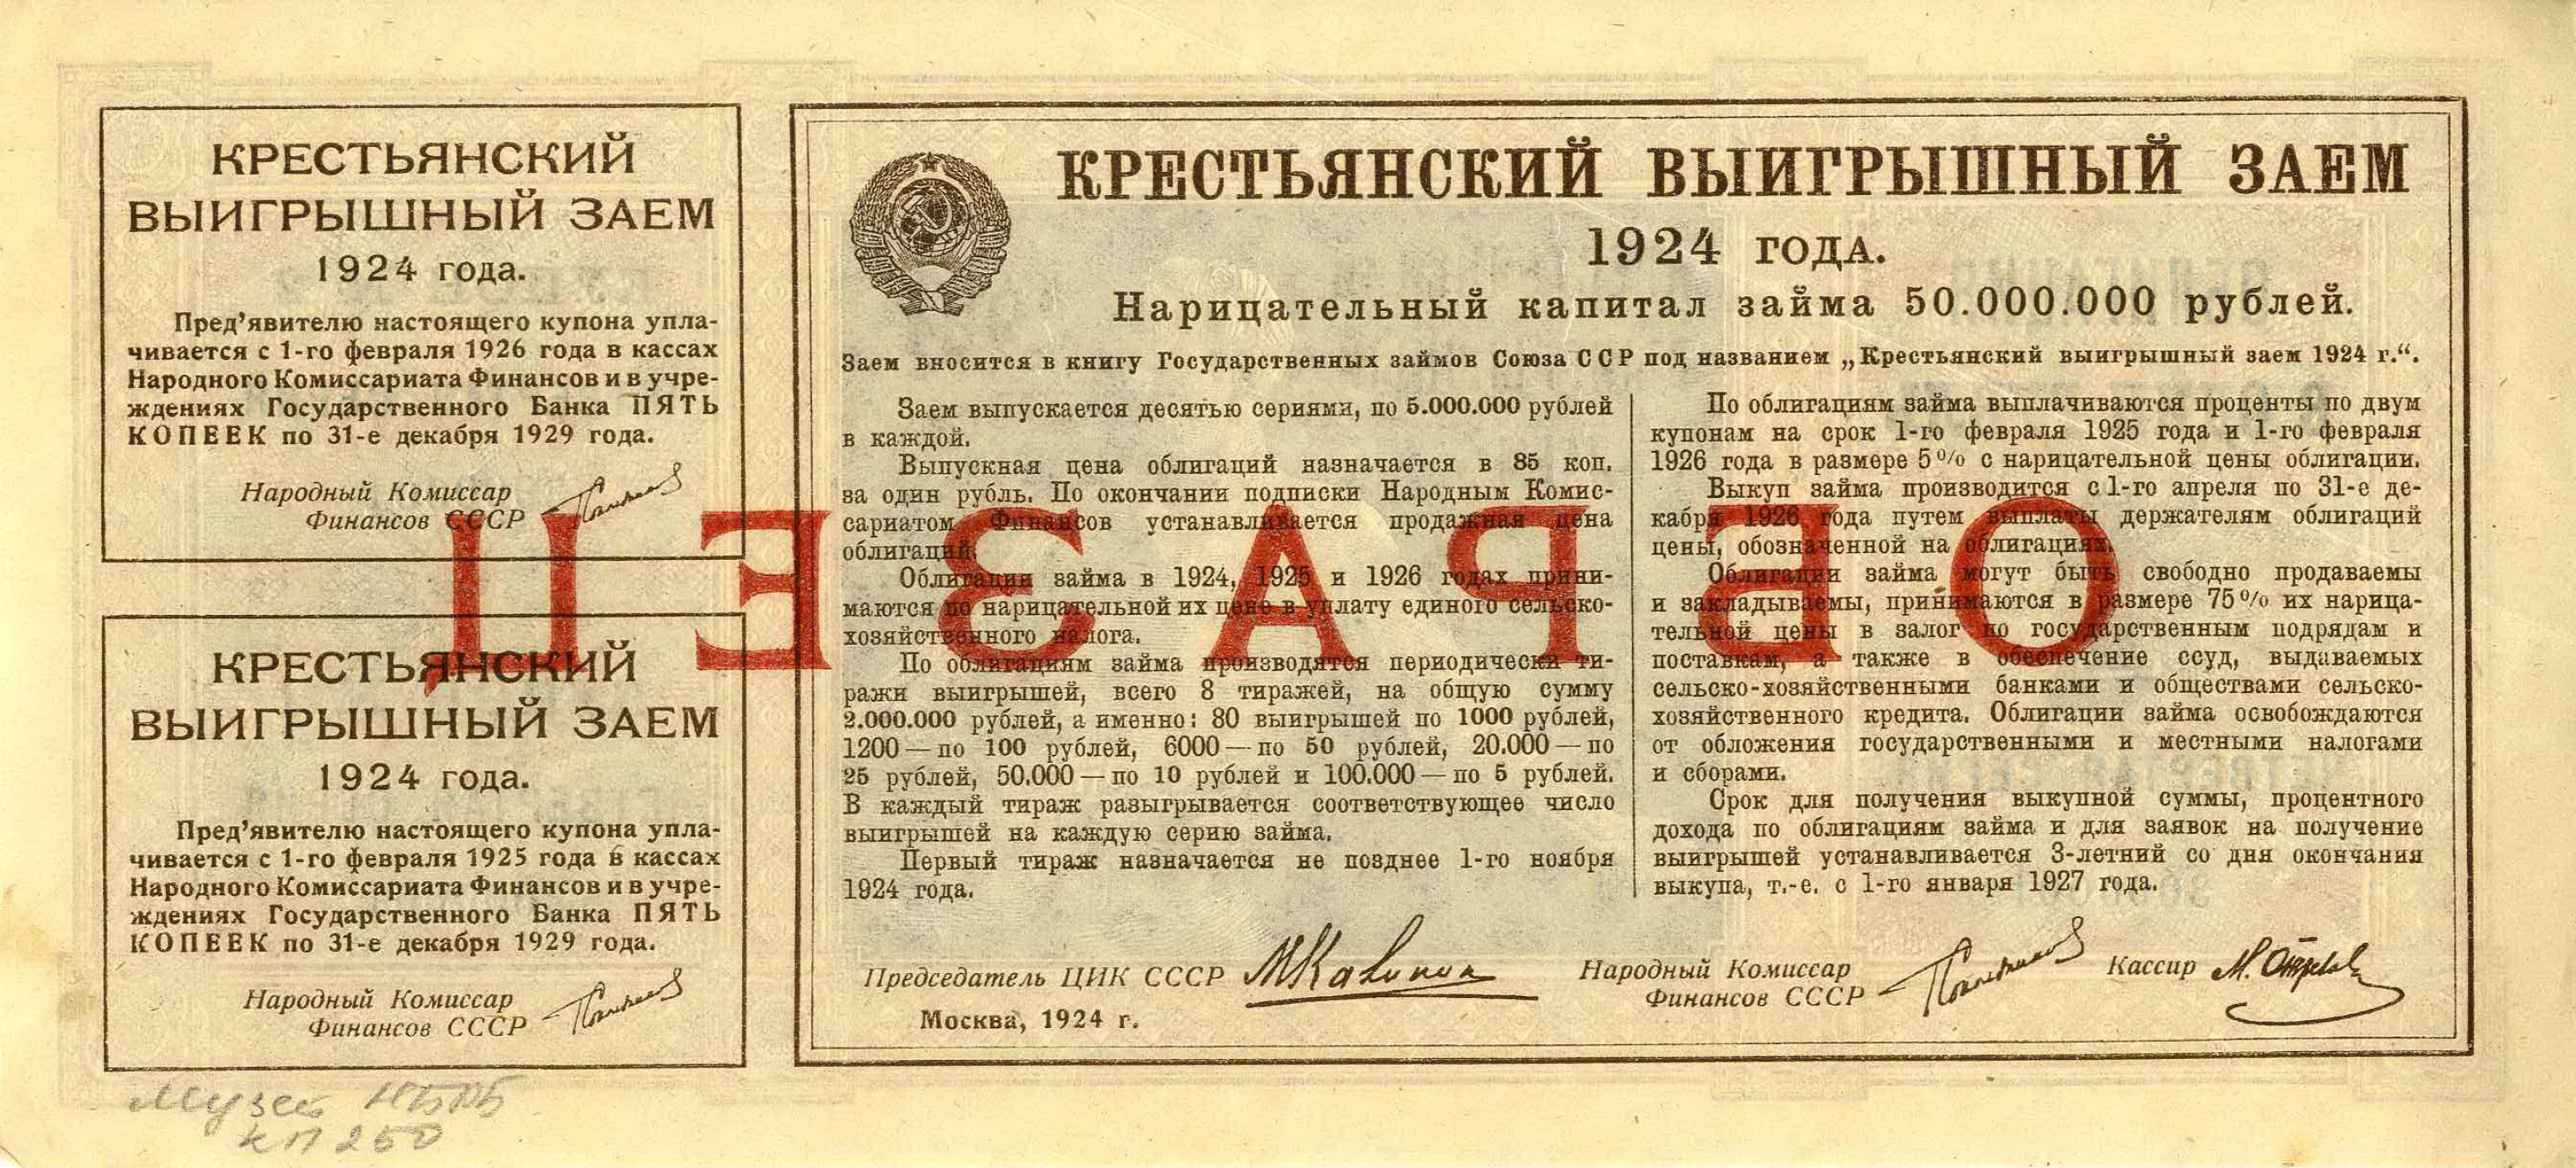 3 рубля займы. Выигрышный заем 1925. Наркоматы 1924 года. 3 Рубля 1924 года. 5 Рублей 1924.